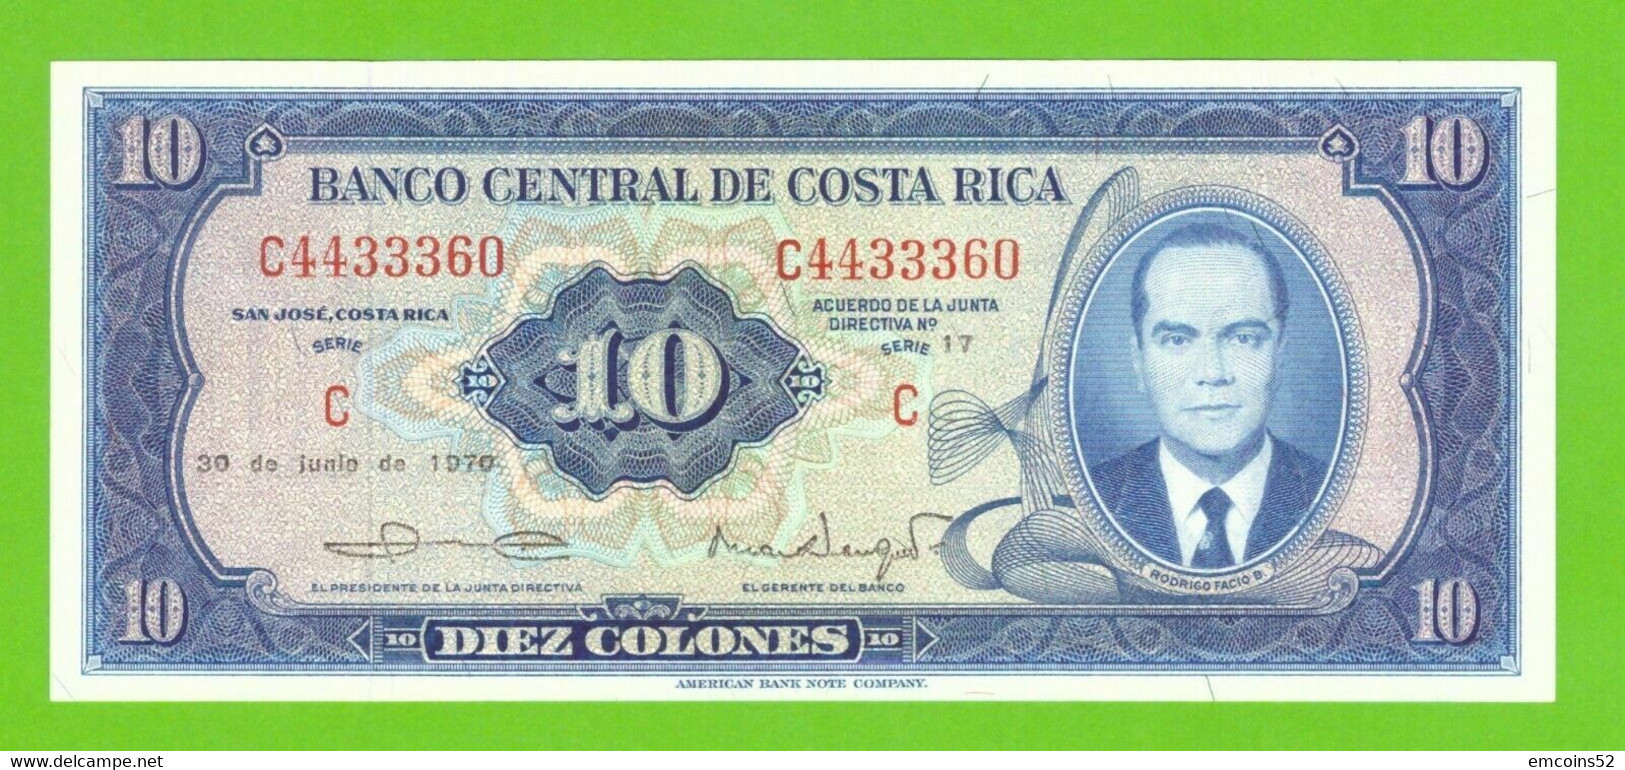 COSTA RICA 10 COLONES 1970  P-230b  UNC - Costa Rica